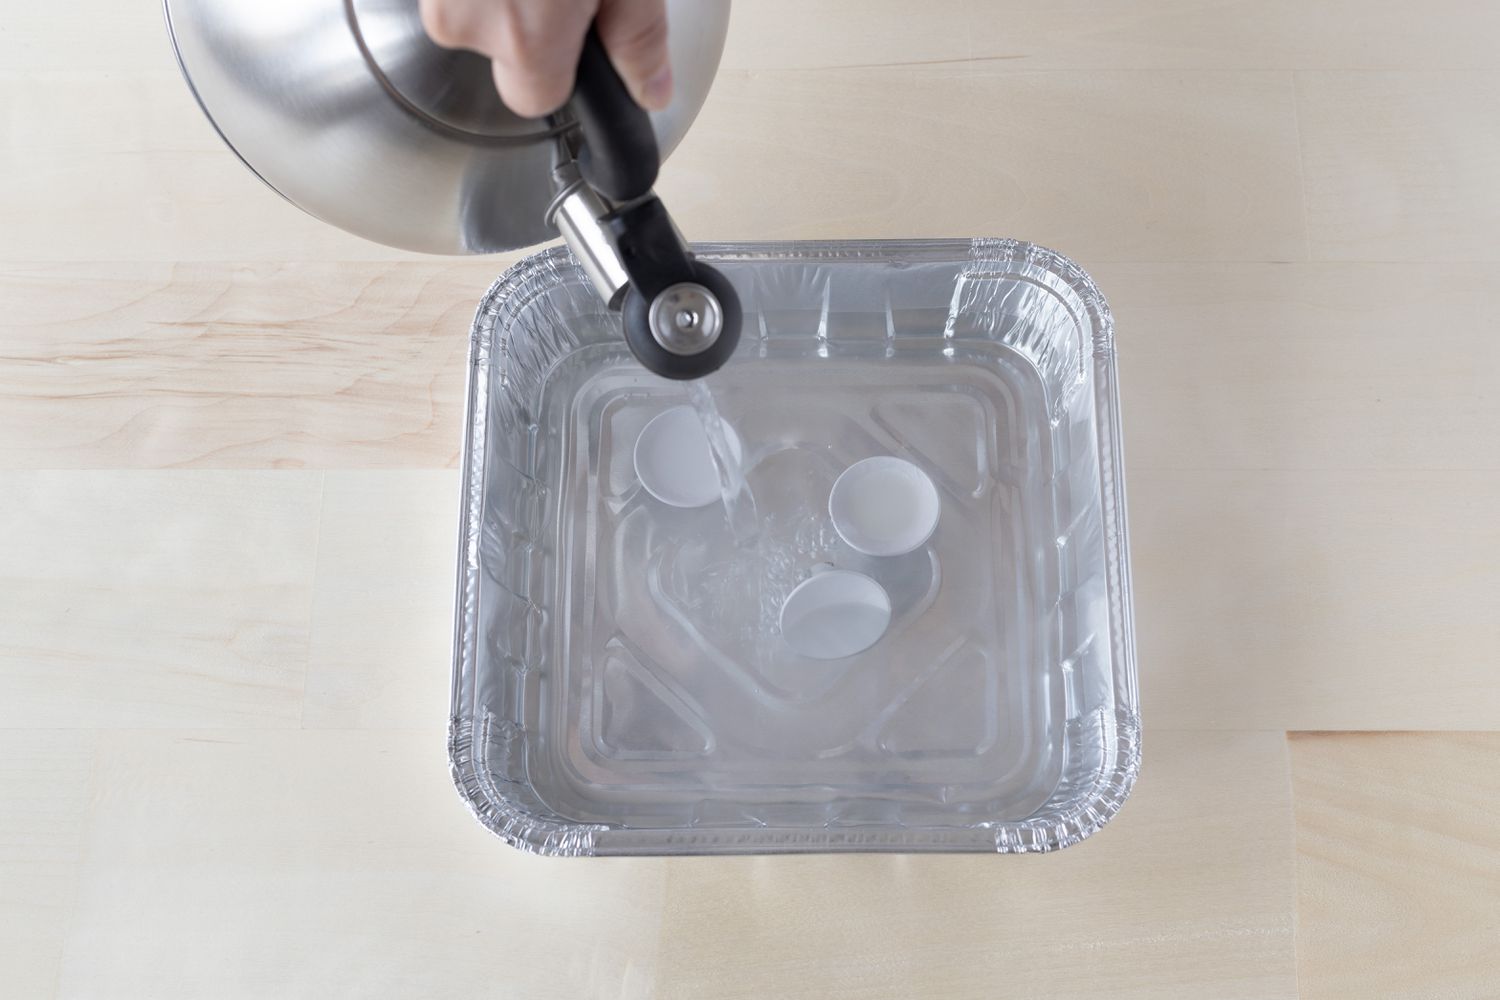 Água fervente da chaleira despejada em uma bandeja de alumínio descartável com botões de metal